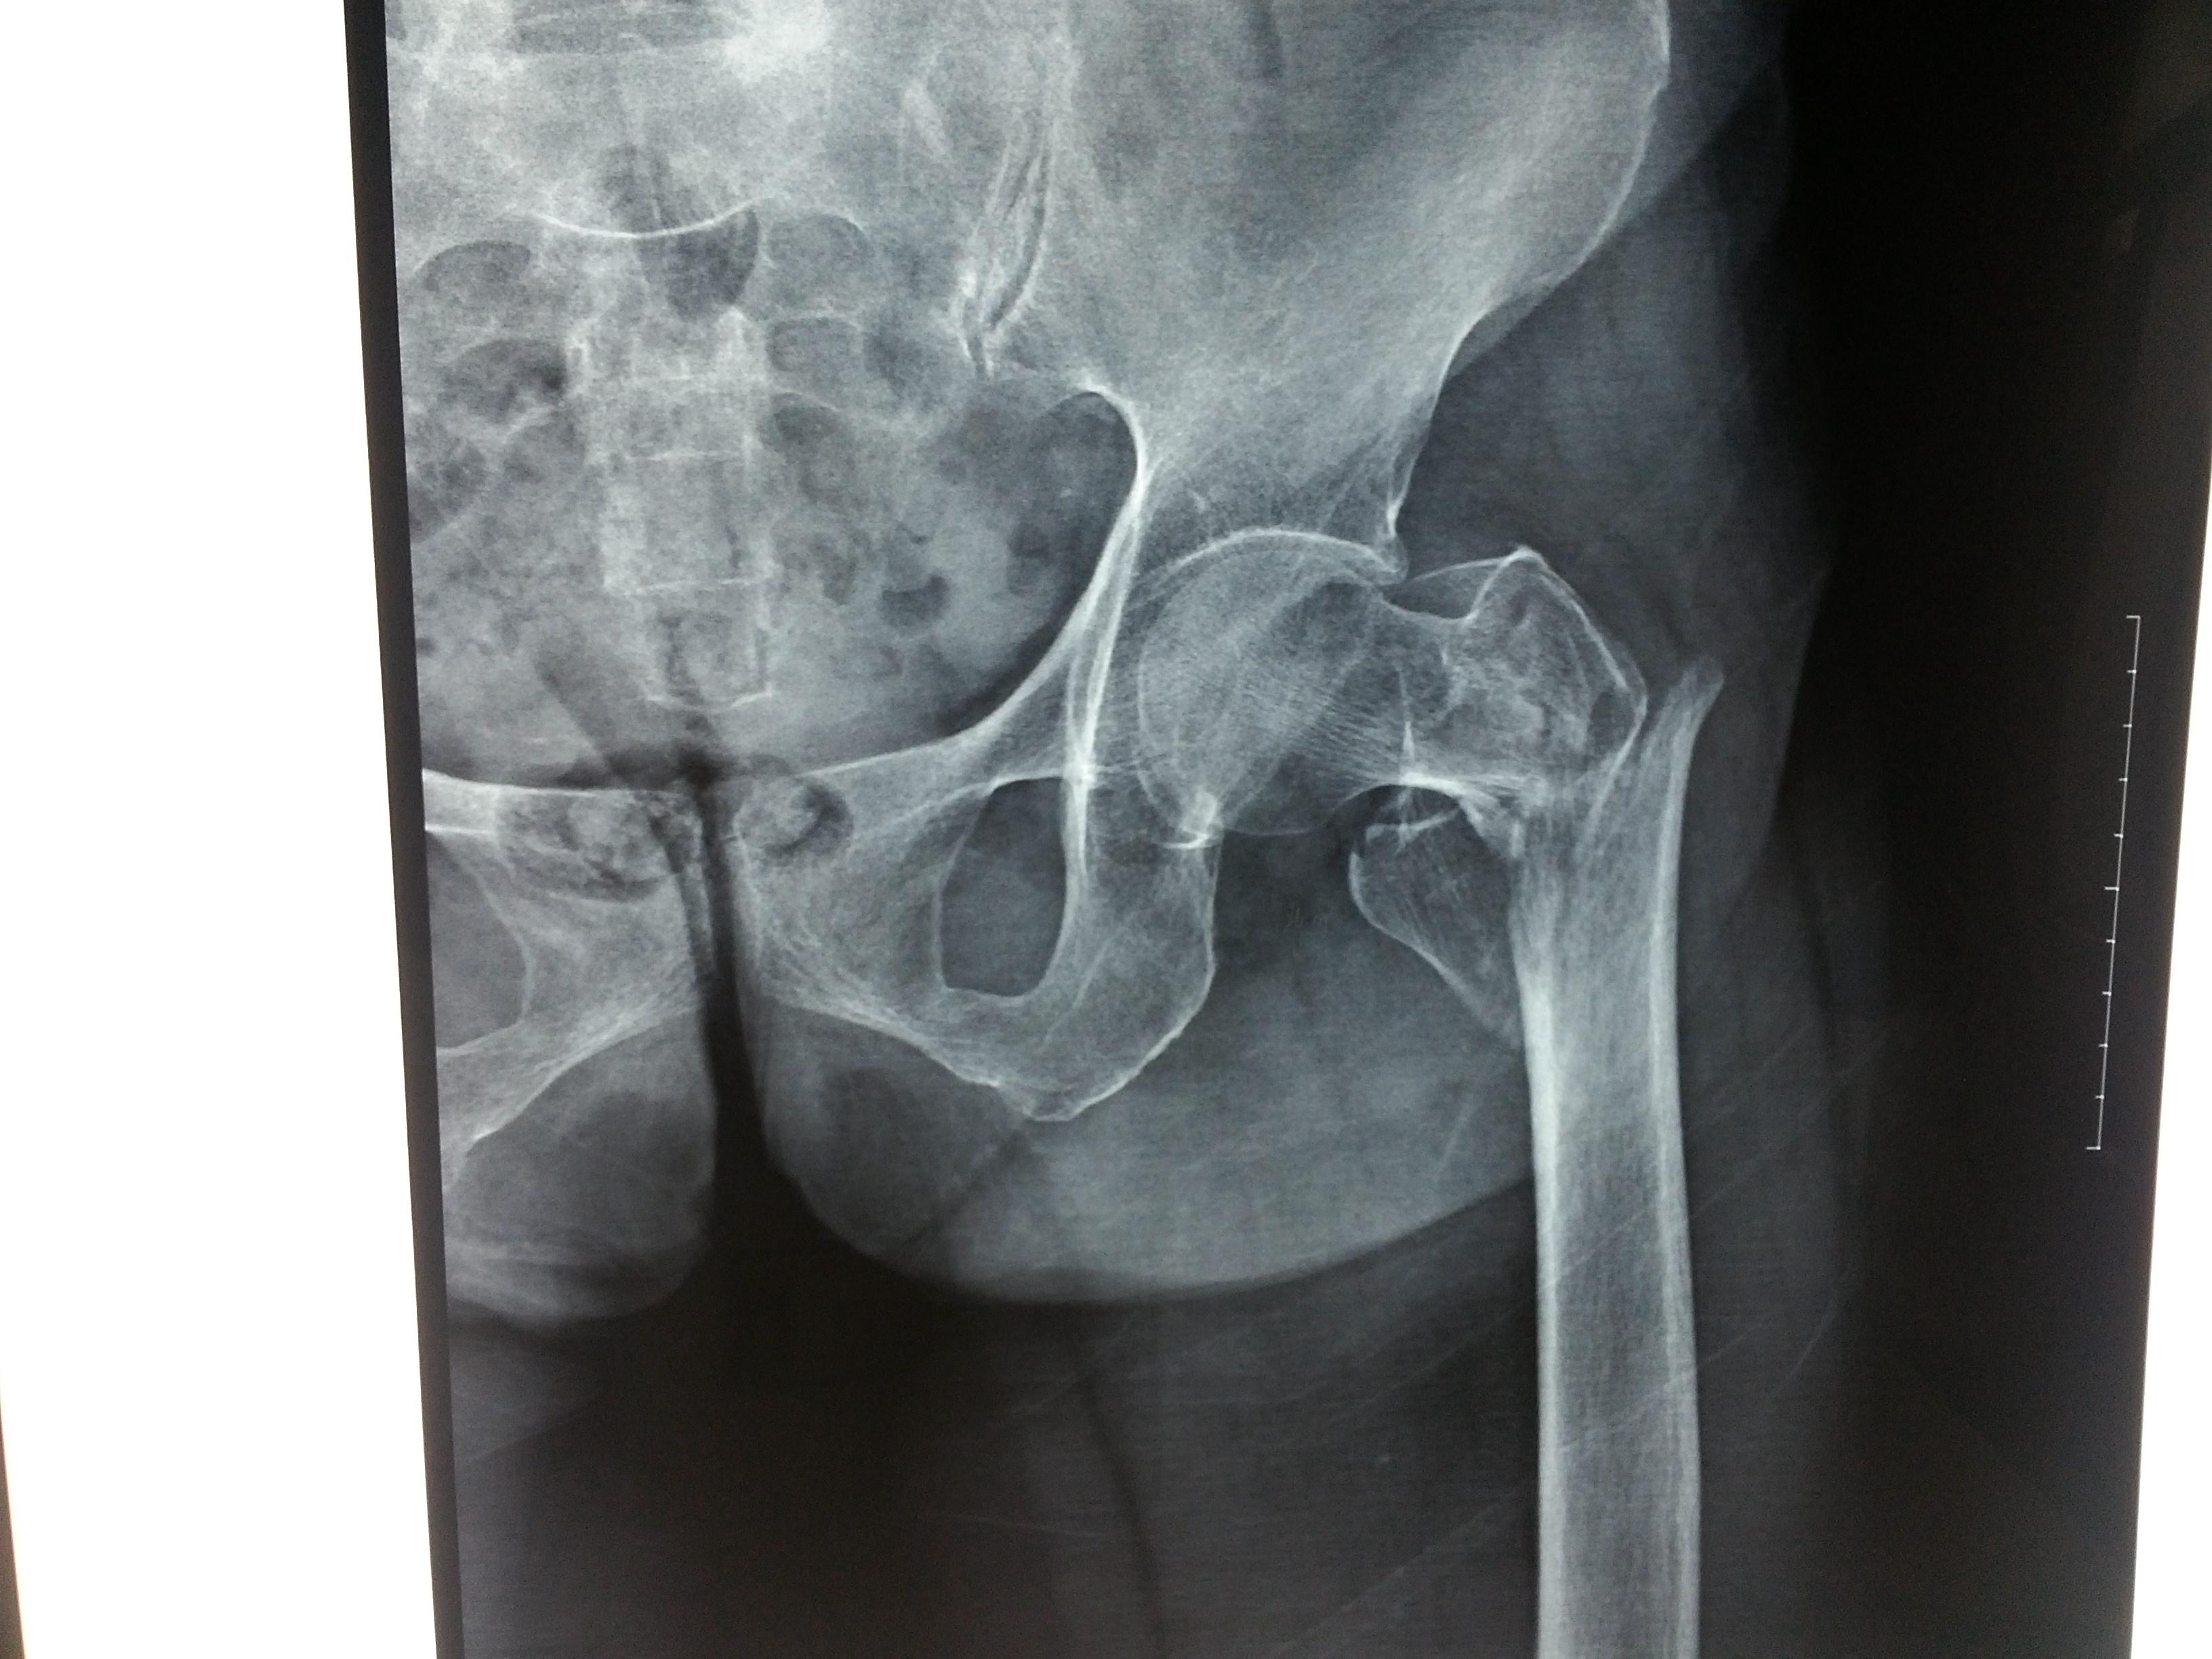 该例股骨粗隆间骨折该选取什么样的手术方式